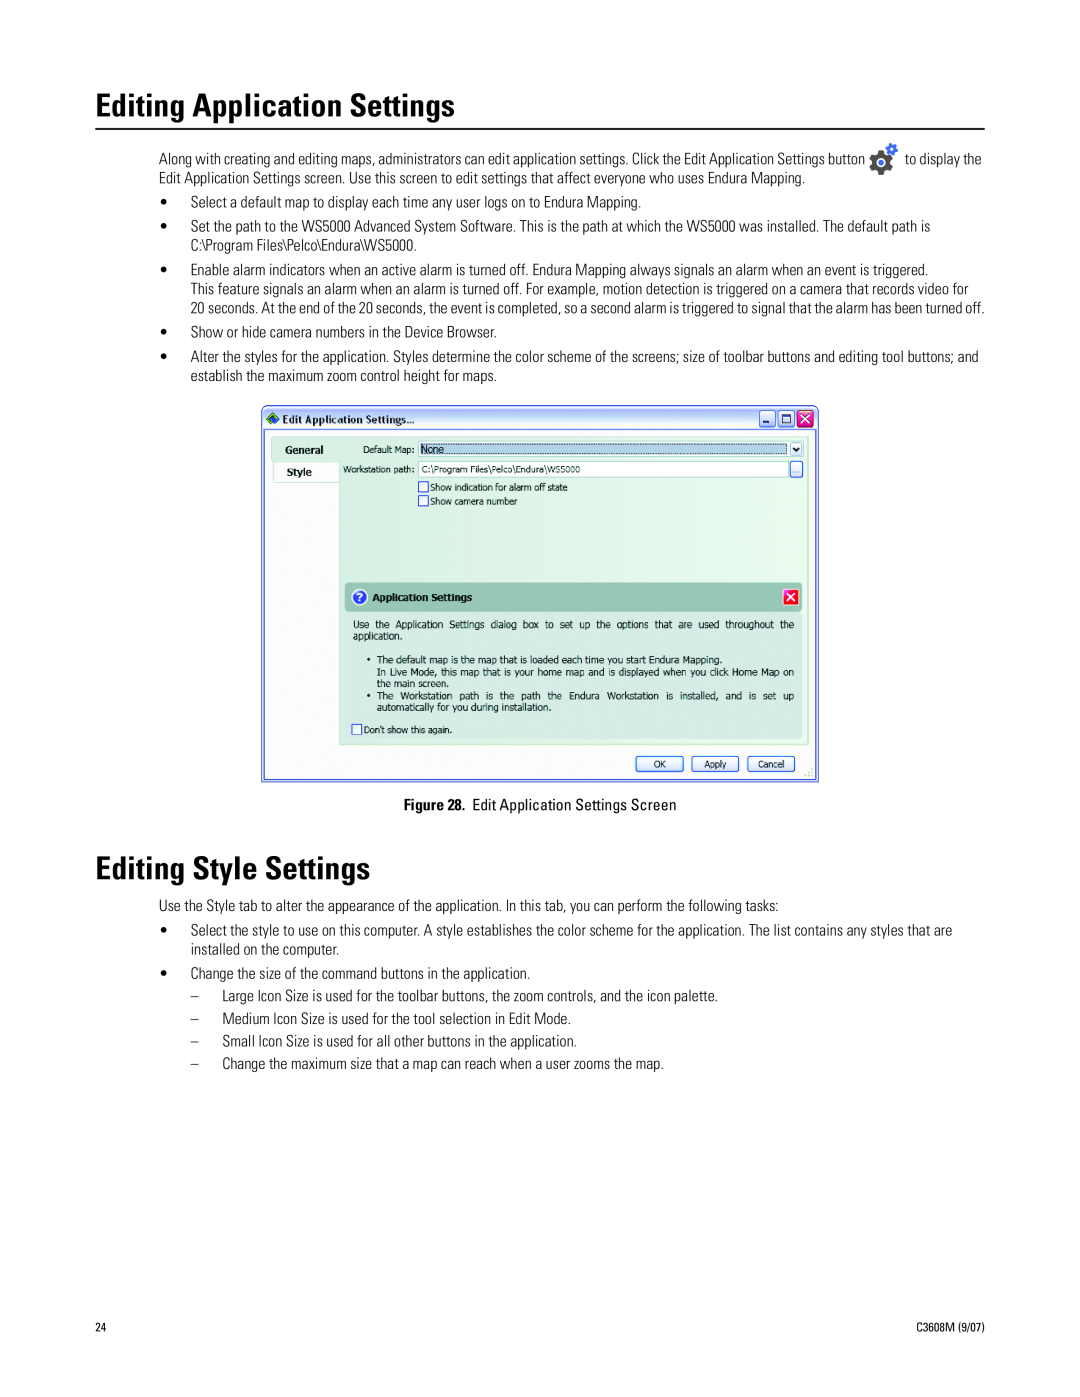 Pelco C3608M (9/07) manual Editing Application Settings, Editing Style Settings 